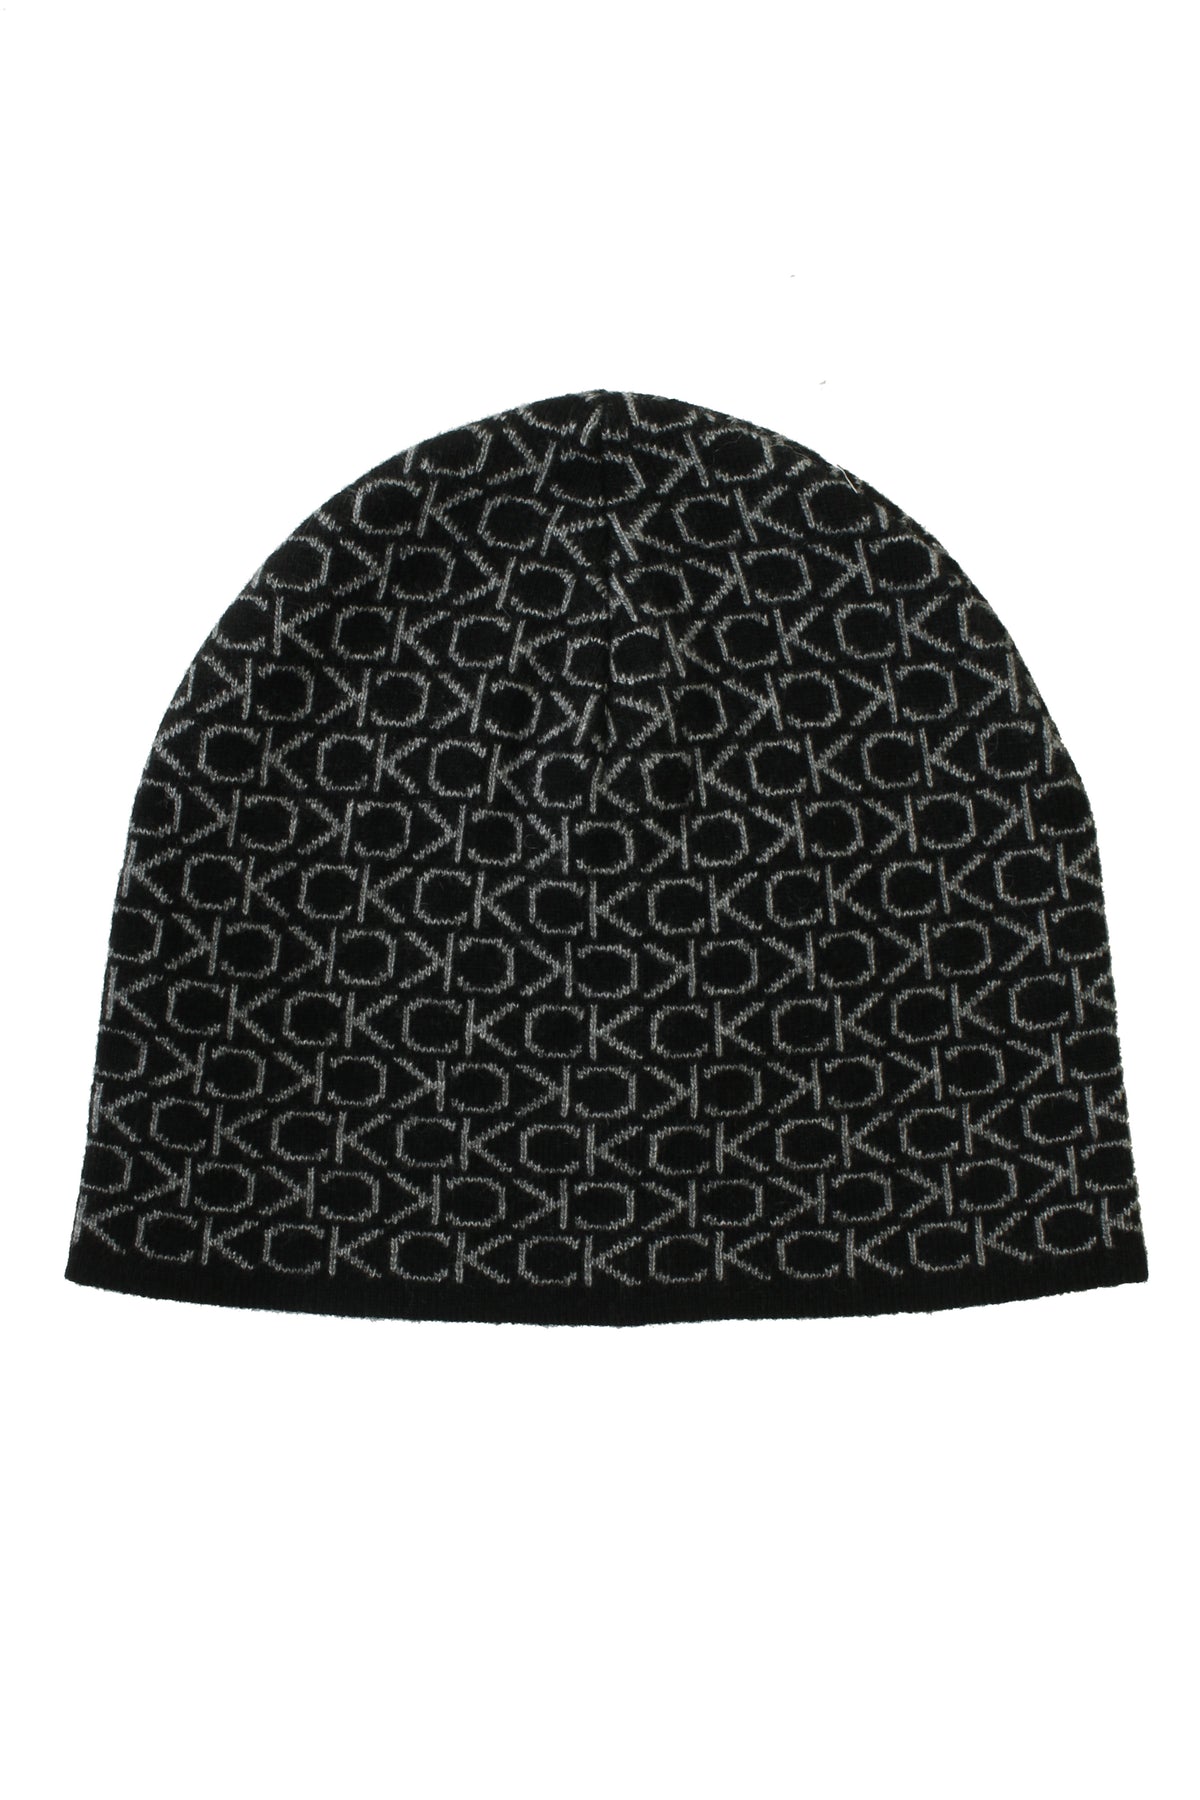 Calvin Klein Mens CK Monogram Wool No Fold Beanie Hat (Ck Black, One Size), 01, K50K509689, Ck Black